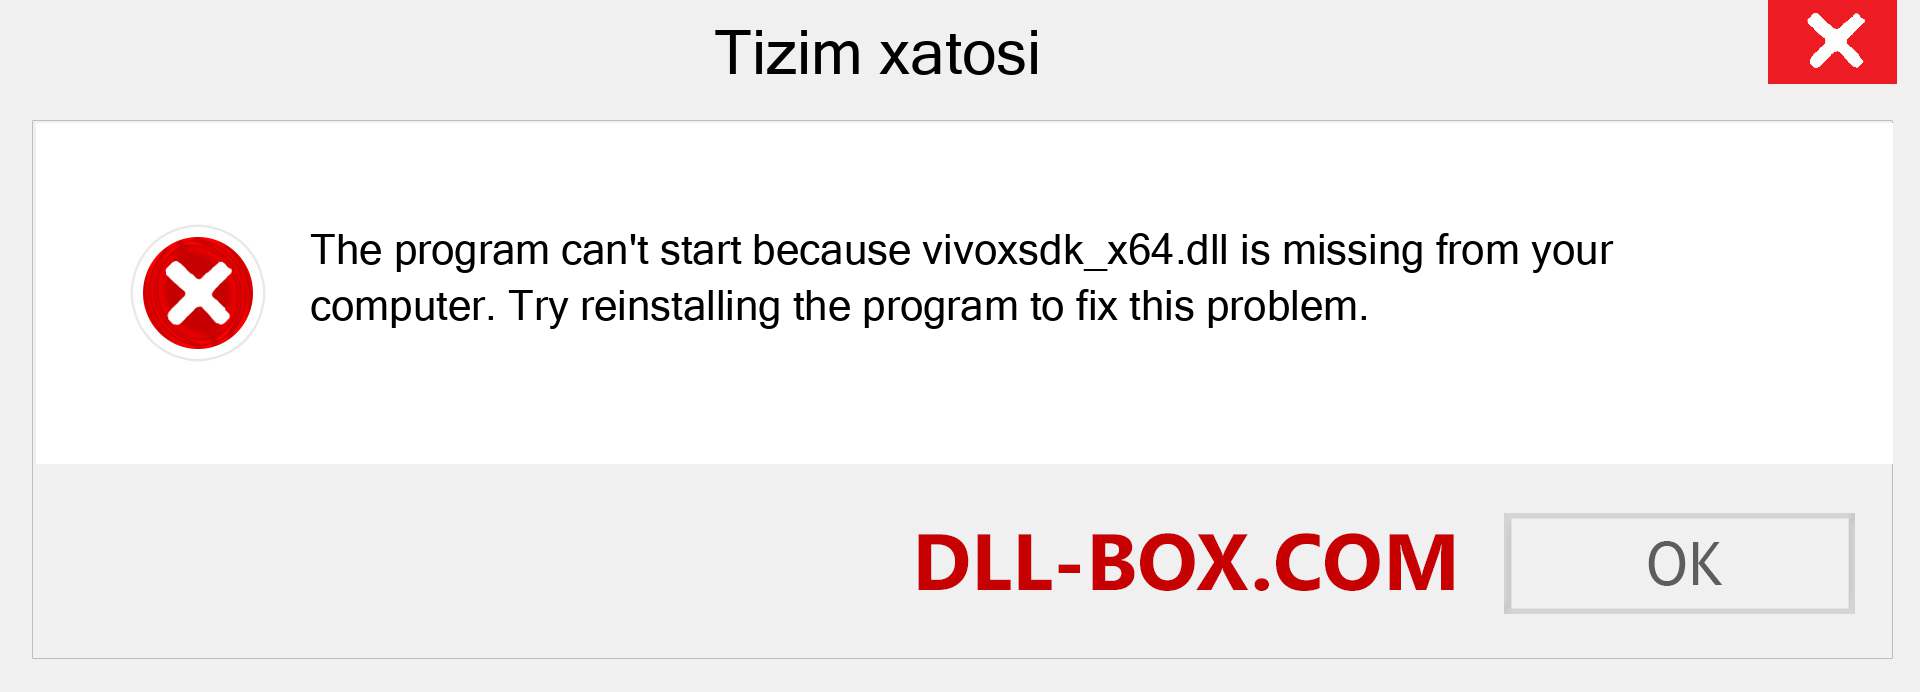 vivoxsdk_x64.dll fayli yo'qolganmi?. Windows 7, 8, 10 uchun yuklab olish - Windowsda vivoxsdk_x64 dll etishmayotgan xatoni tuzating, rasmlar, rasmlar